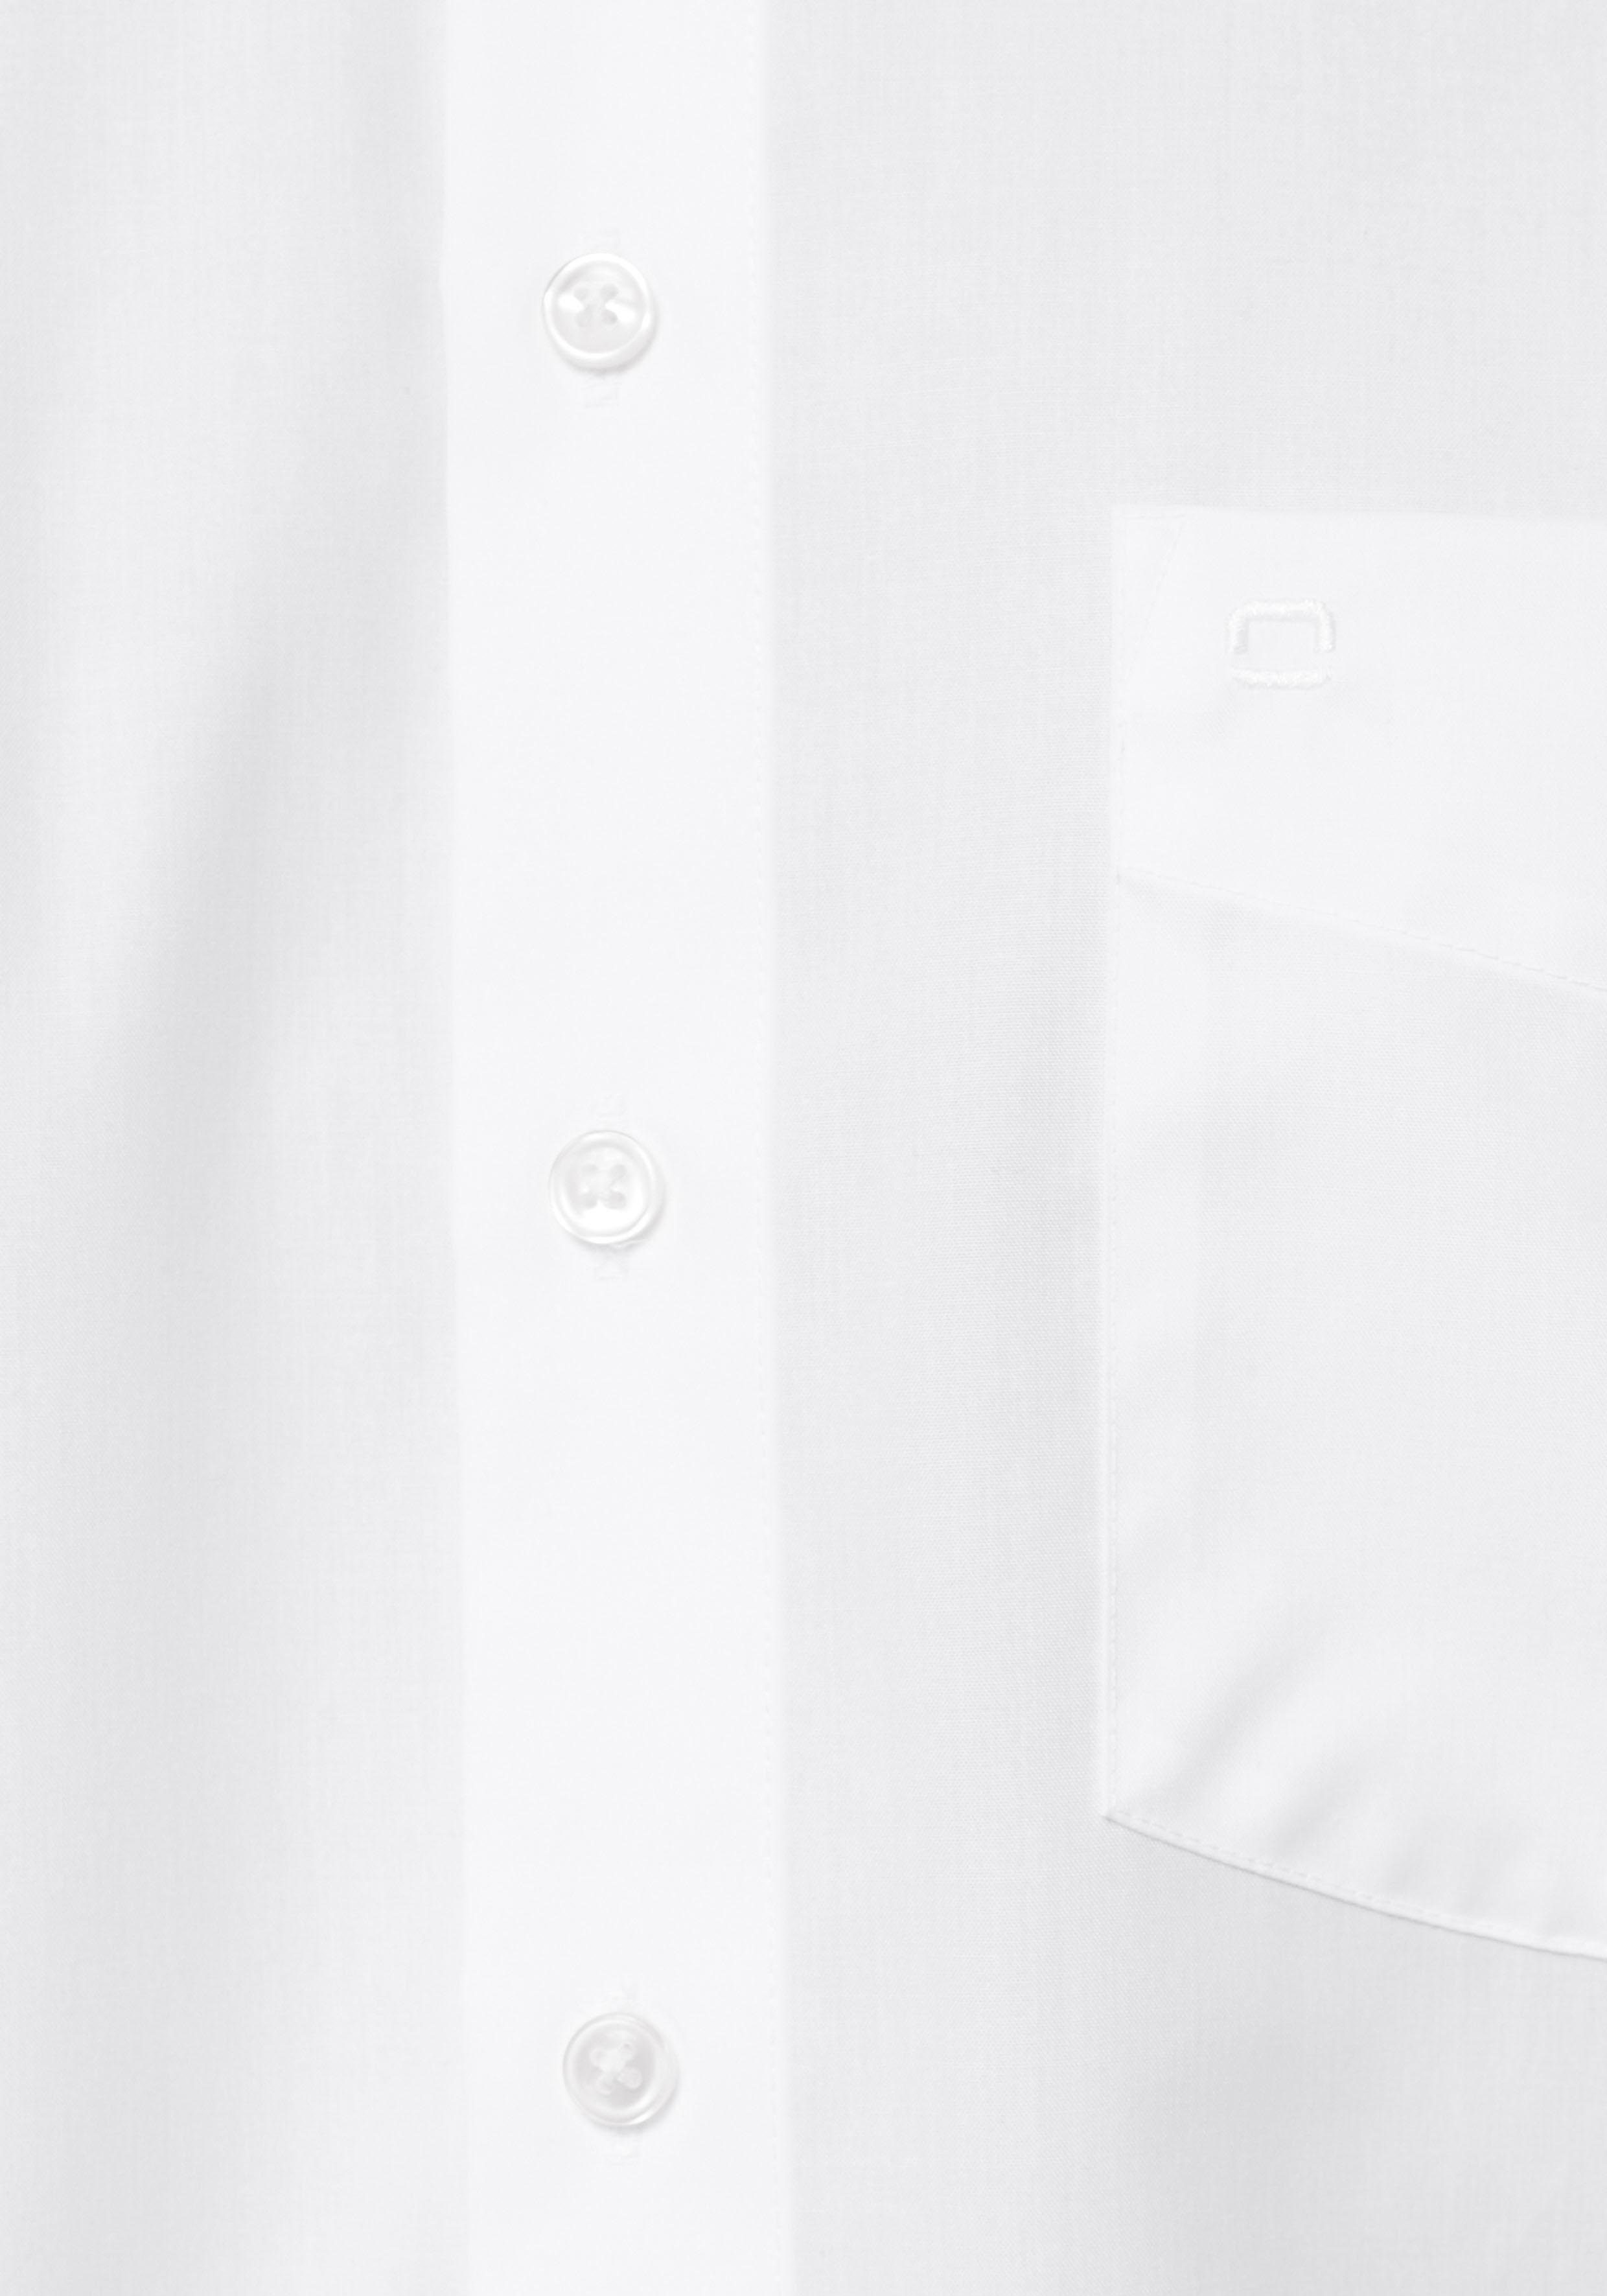 Luxor bügelfrei Kurzarmhemd Businesshemd mit comfort-fit weiß Brusttasche, OLYMP